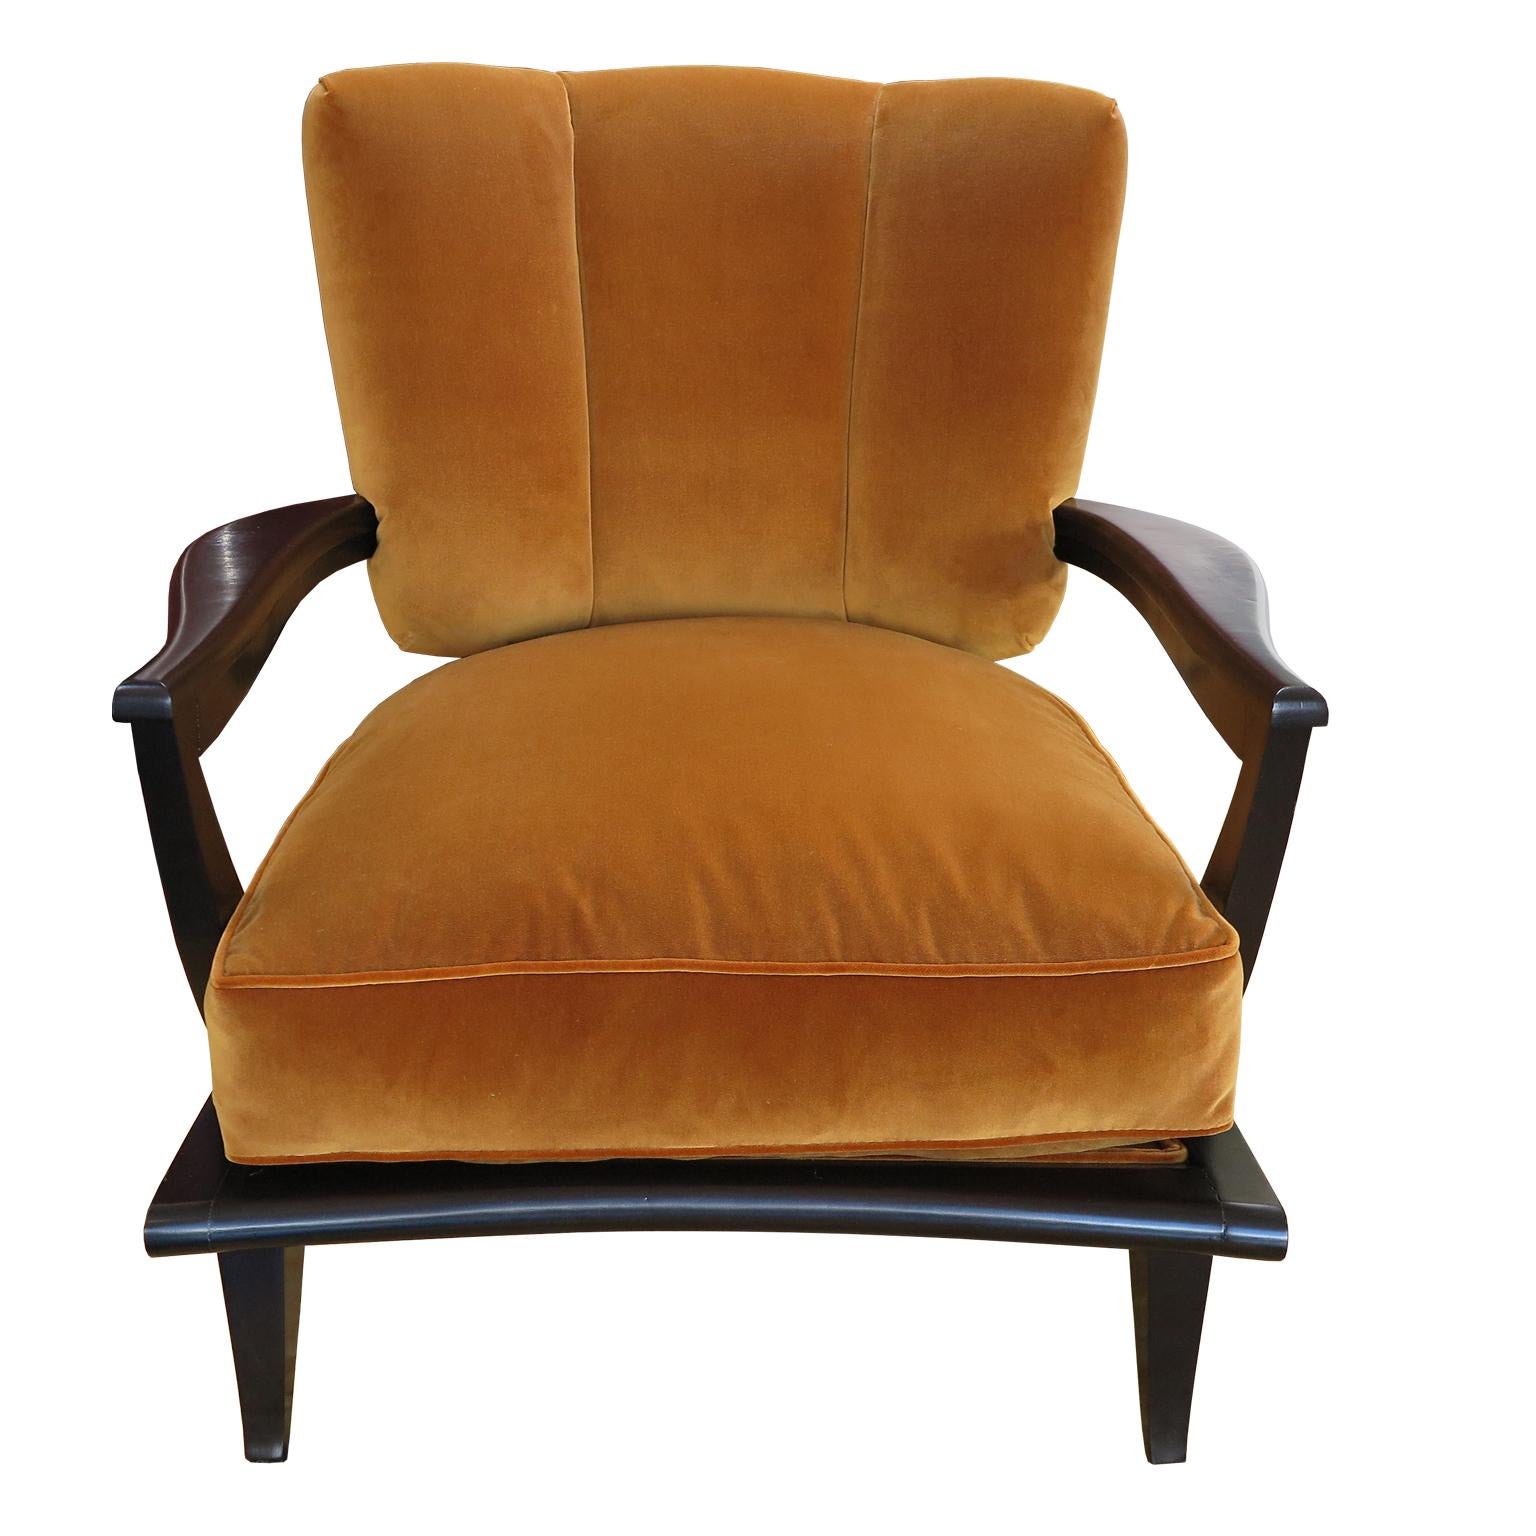 Paire de chaises basses de salon modèle SK40 conçues par Etienne-Henri Martin et fabriquées par Steiner, France 1952. Ces chaises sont dotées d'un cadre en bois de rose teinté espresso foncé et d'une finition satinée.  Ils présentent un dossier